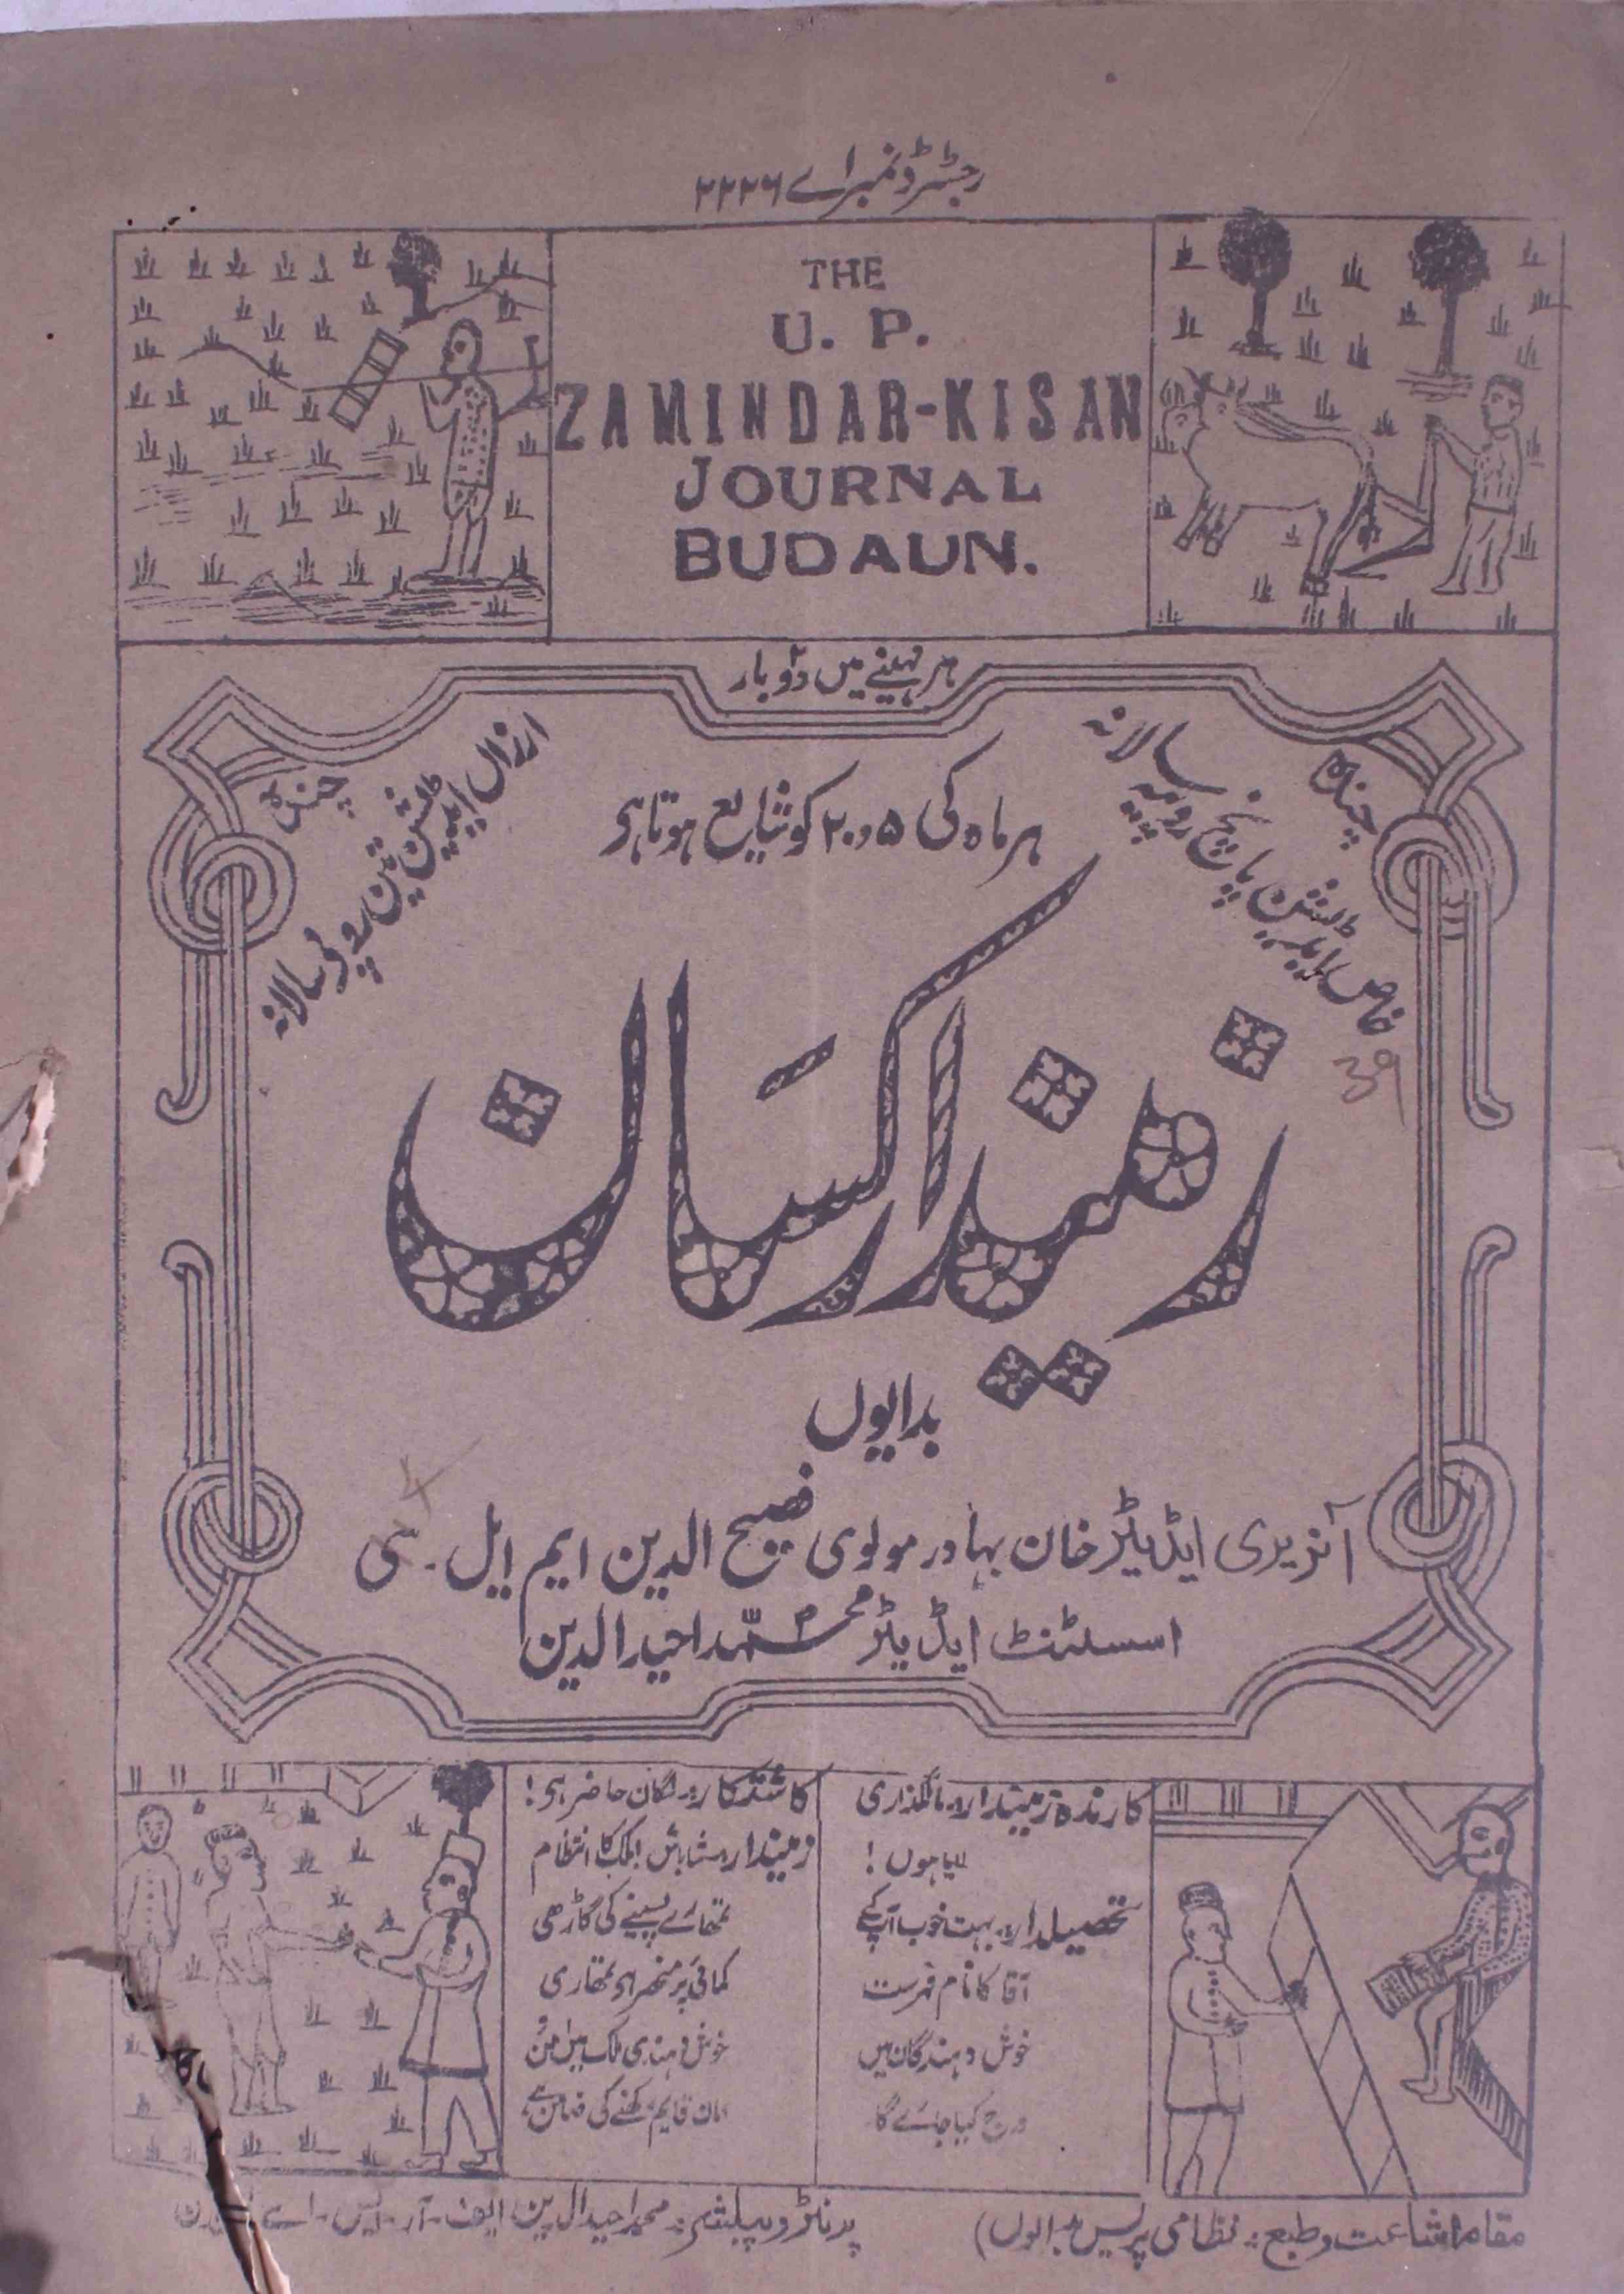 ज़मीन्दार किसान- Magazine by मुहम्मद अहीदुद्दीन बदायुनी 